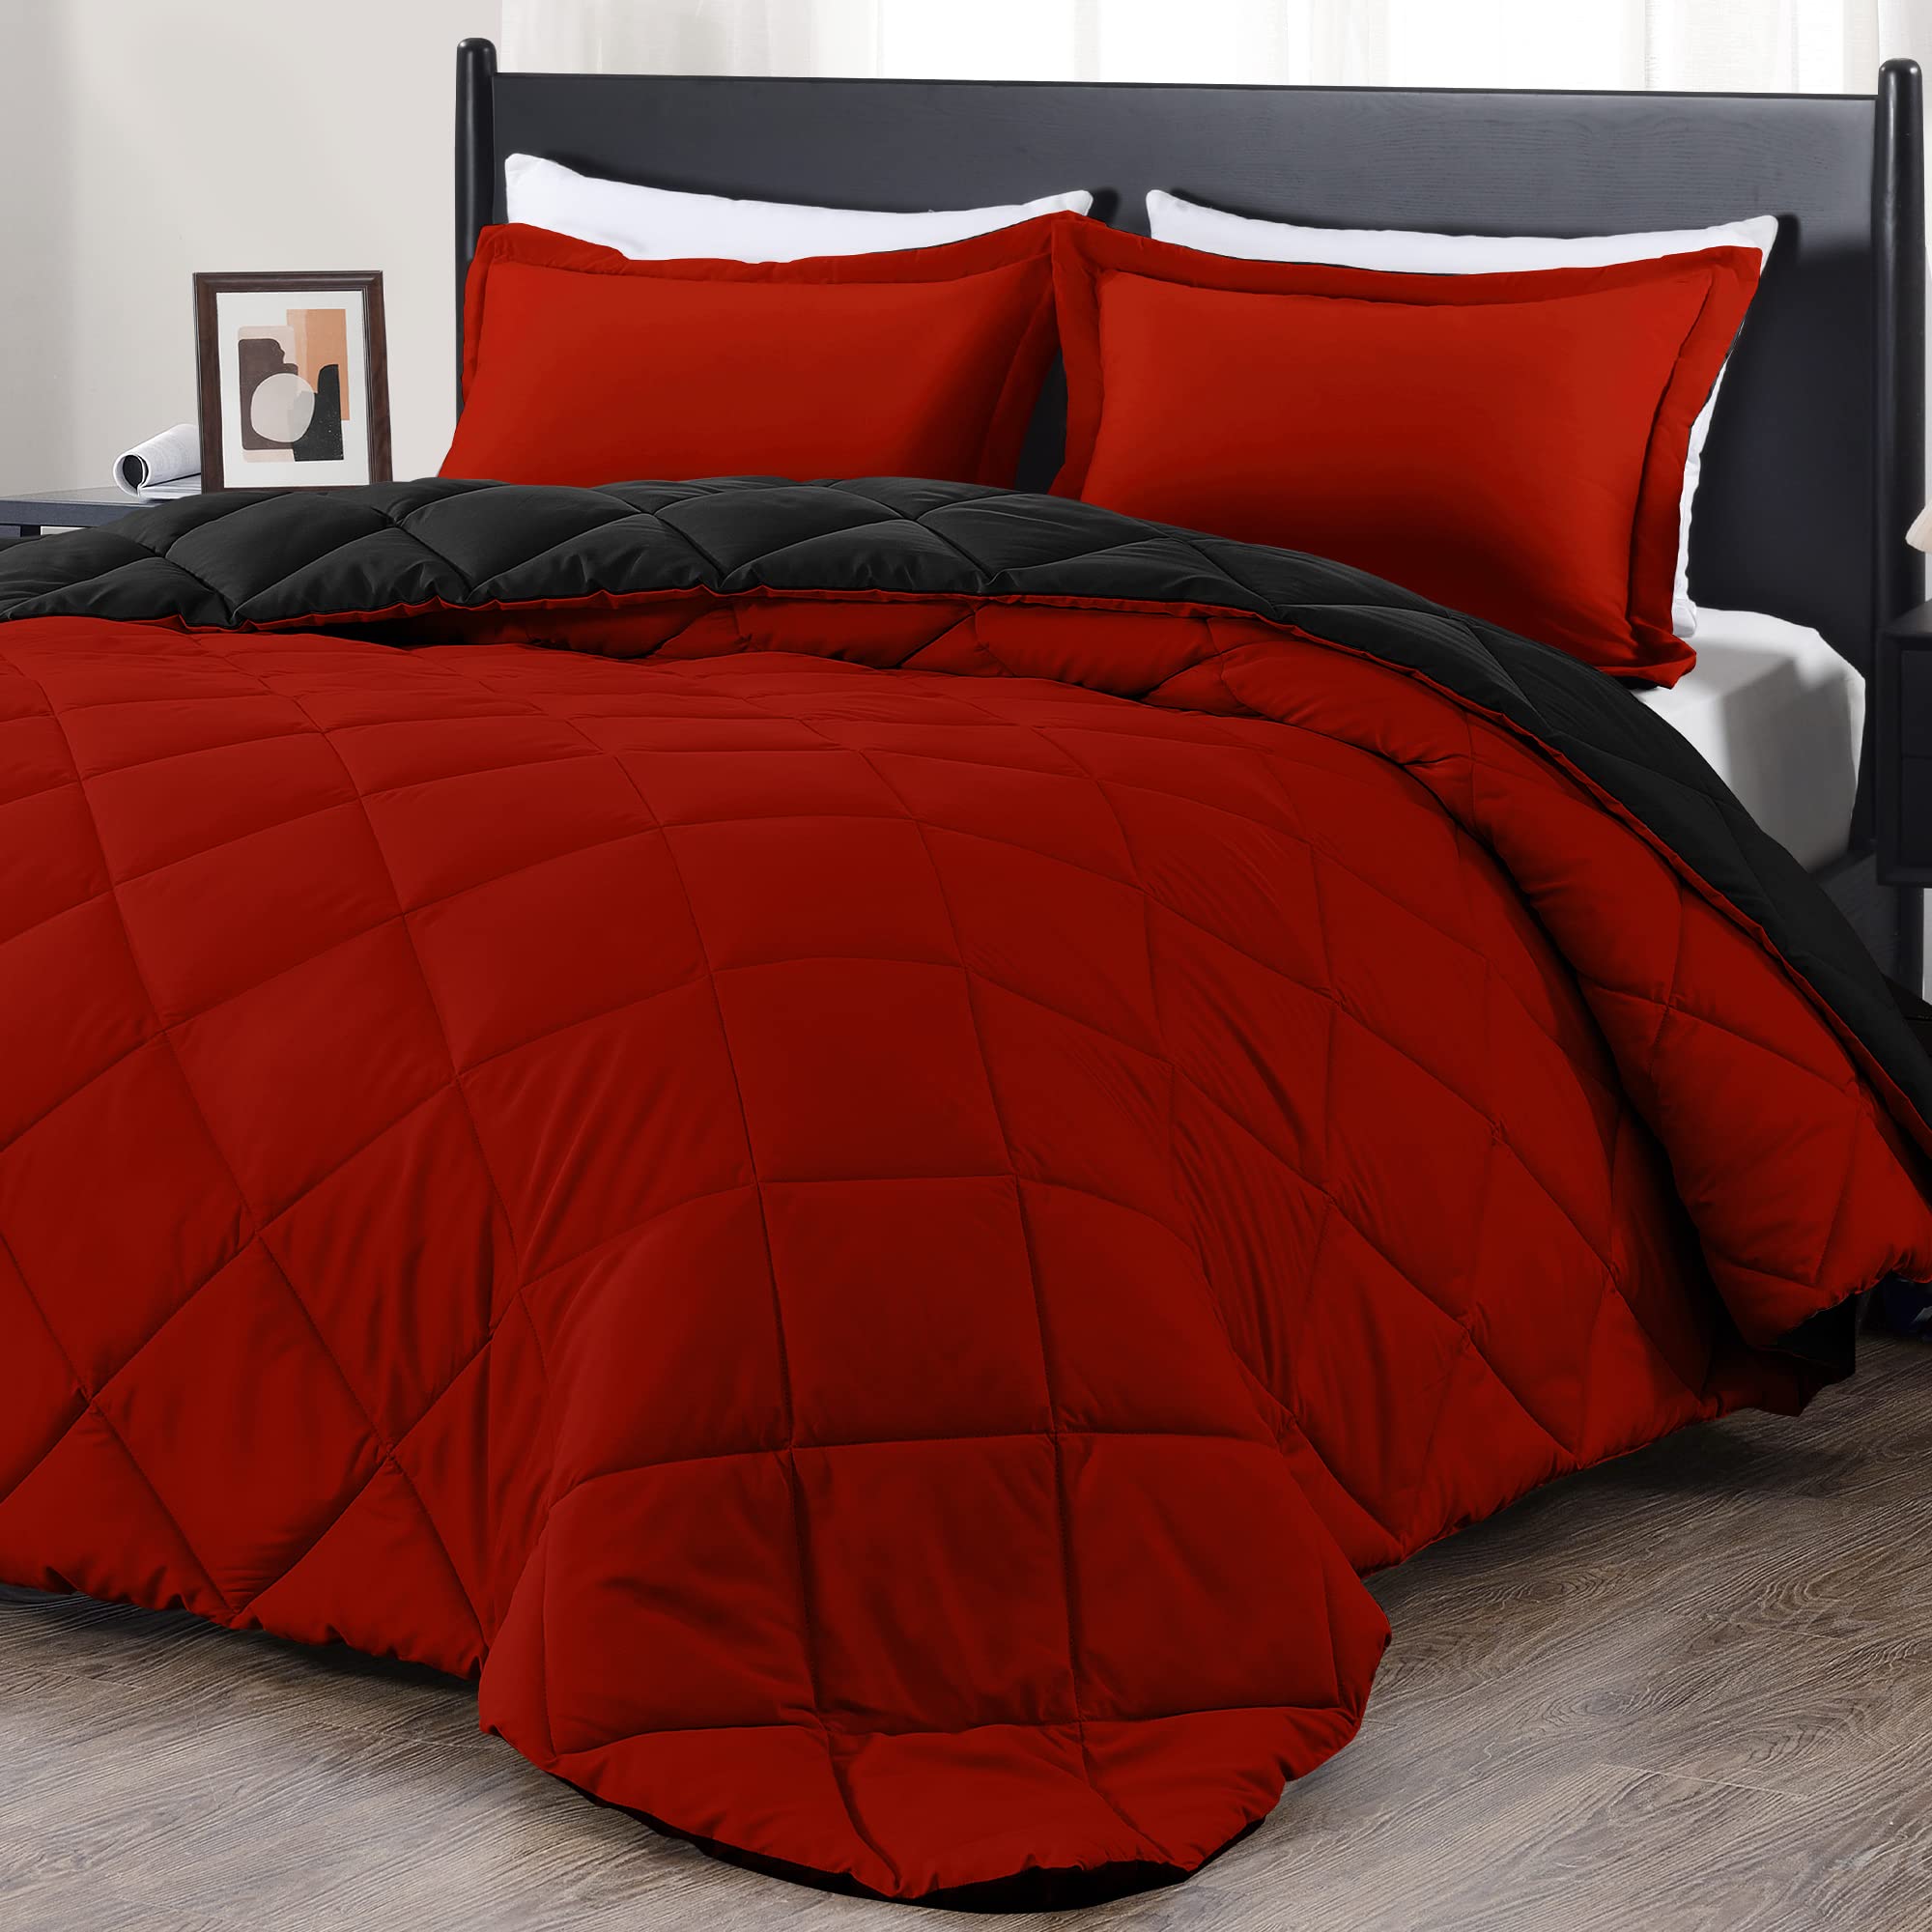 Book Cover downluxe Queen Comforter Set - Red and Black Queen Comforter, Soft Bedding Comforter Sets for All Seasons, Queen Bed Comforter Set - 3 Pieces - 1 Comforter (88